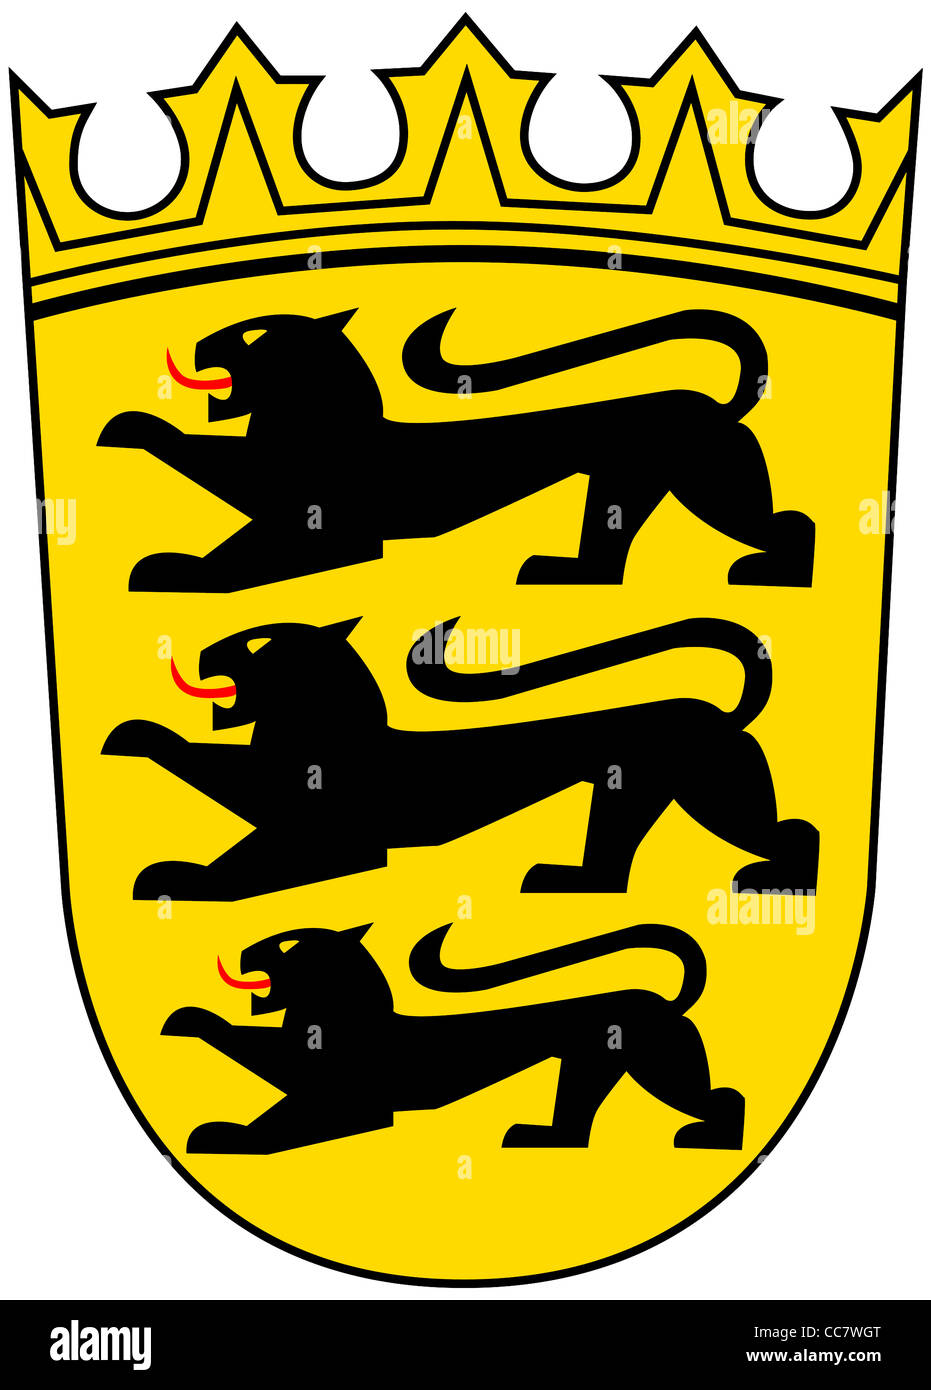 Wappen des deutschen Bundeslandes Baden-Württemberg. Stockfoto